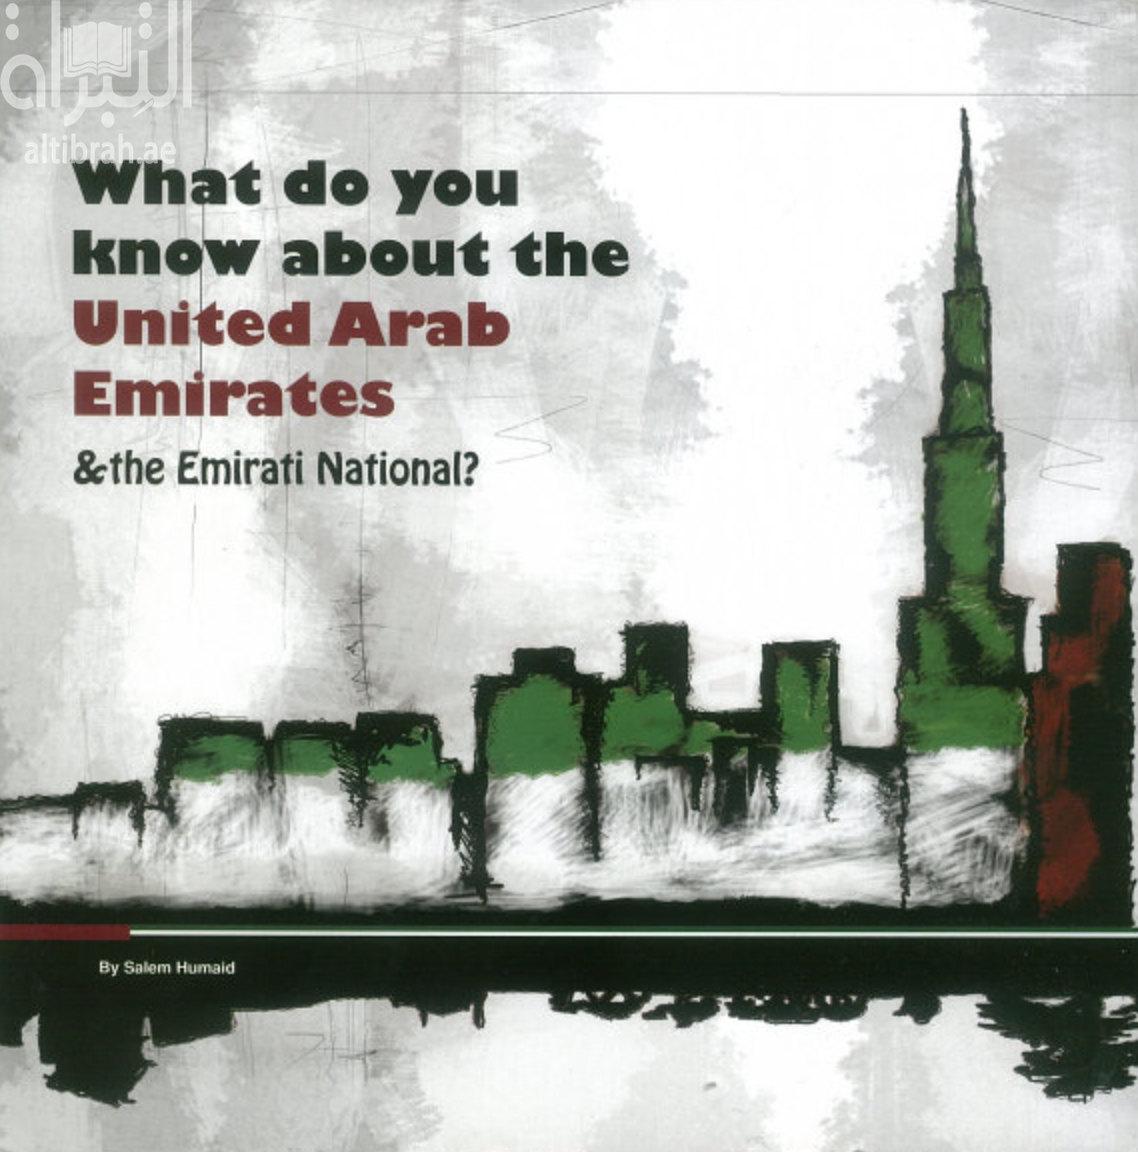 غلاف كتاب ماذا تعرف عن دولة الإمارات العربية المتحدة وعن المواطن الإماراتي ؟ What do you know about the United Arab Emirates & the Emirati National ?